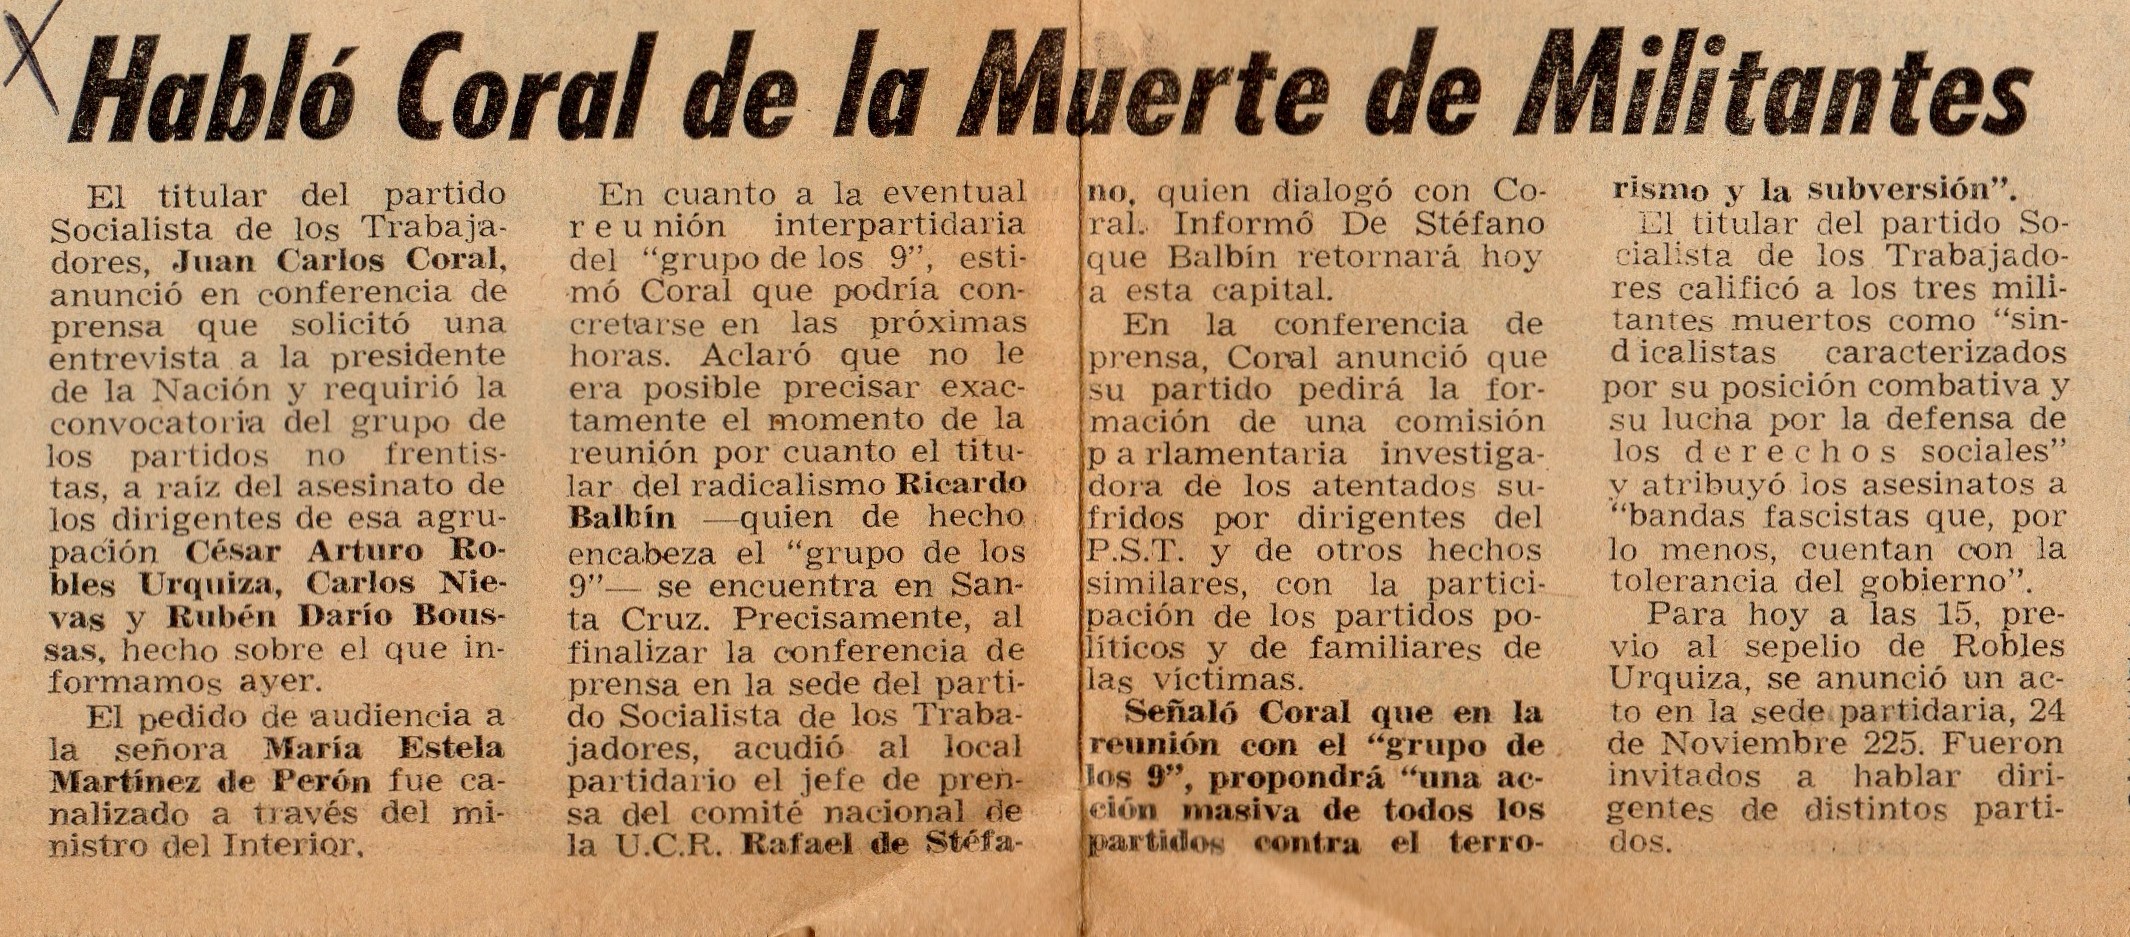 Asesinato en Clarín (recorte)- 5/11/1974